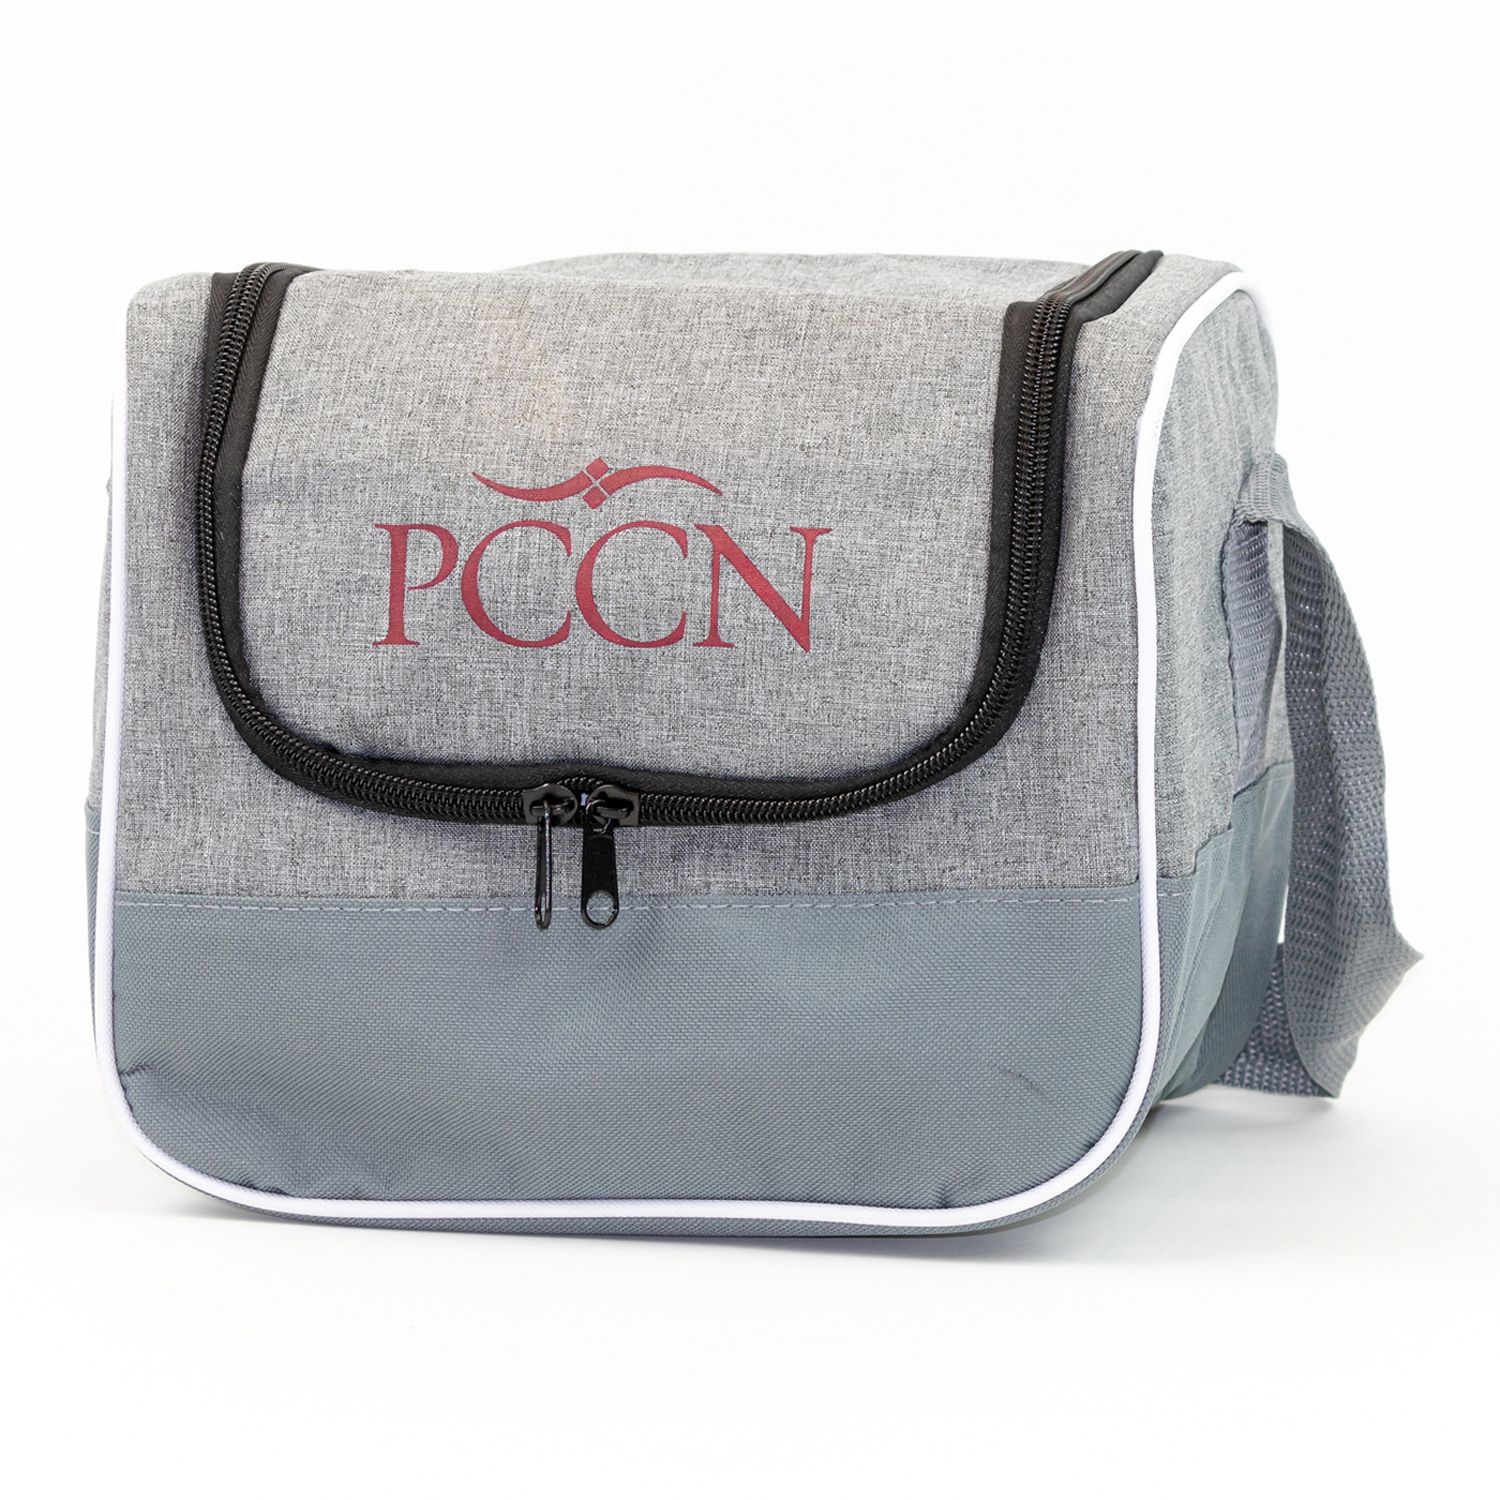 PCCN Lunch Cooler Bag